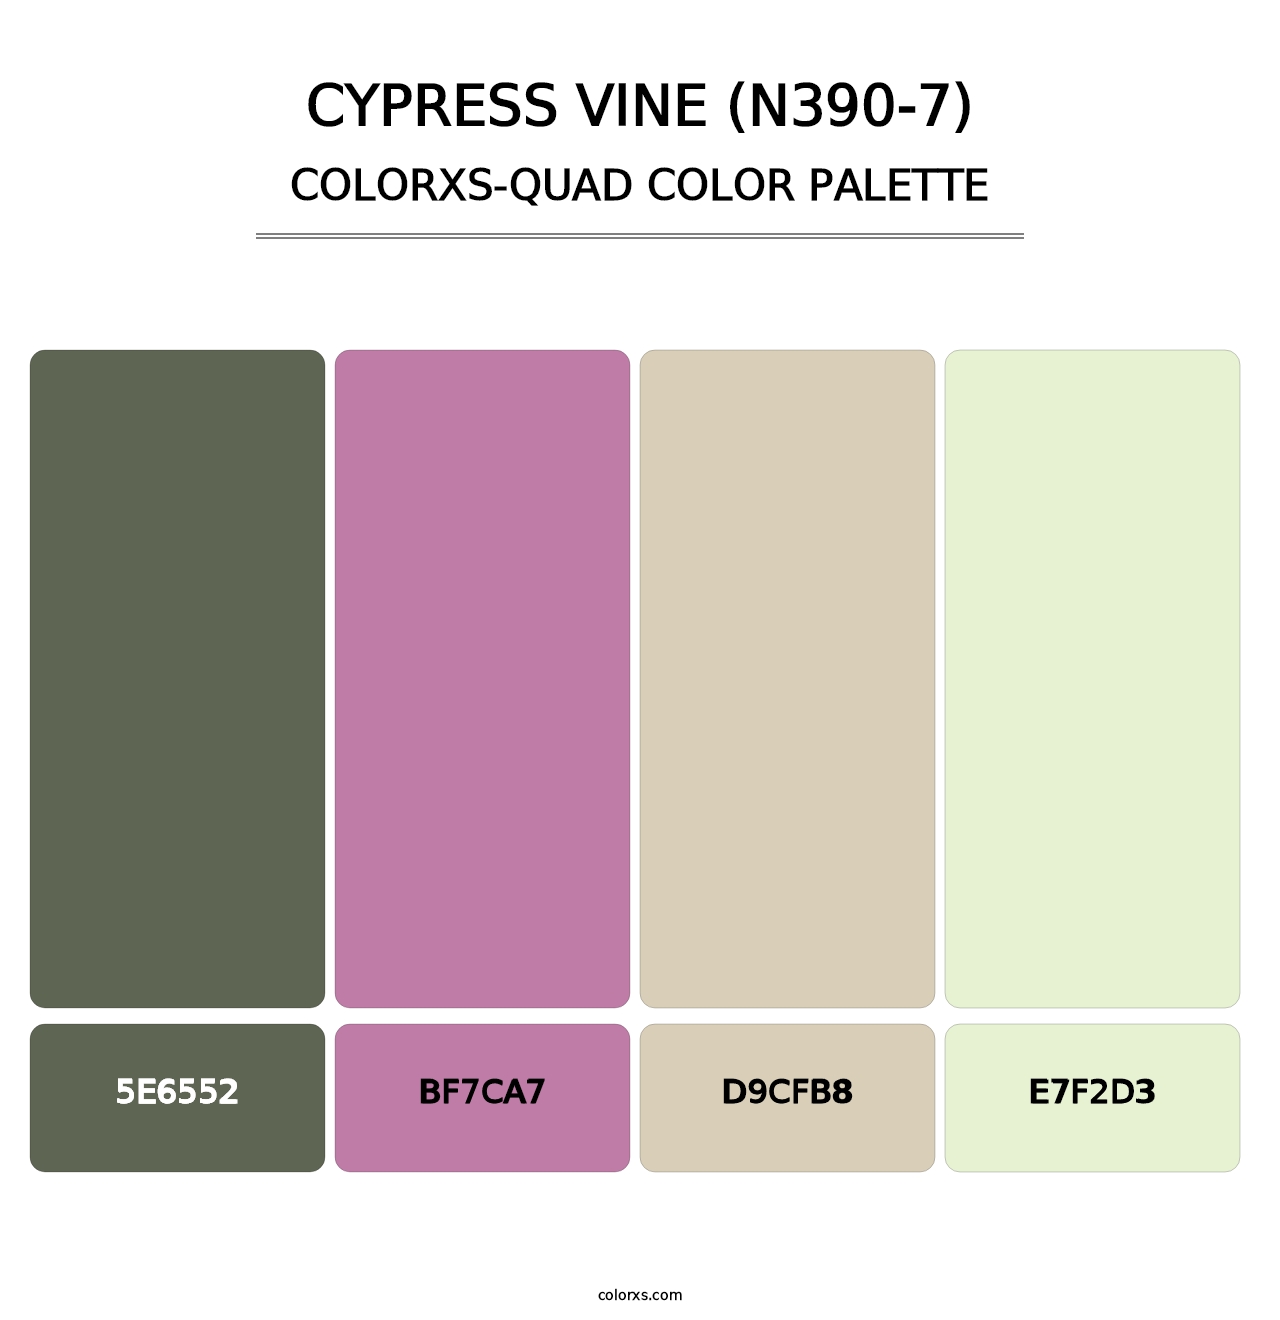 Cypress Vine (N390-7) - Colorxs Quad Palette